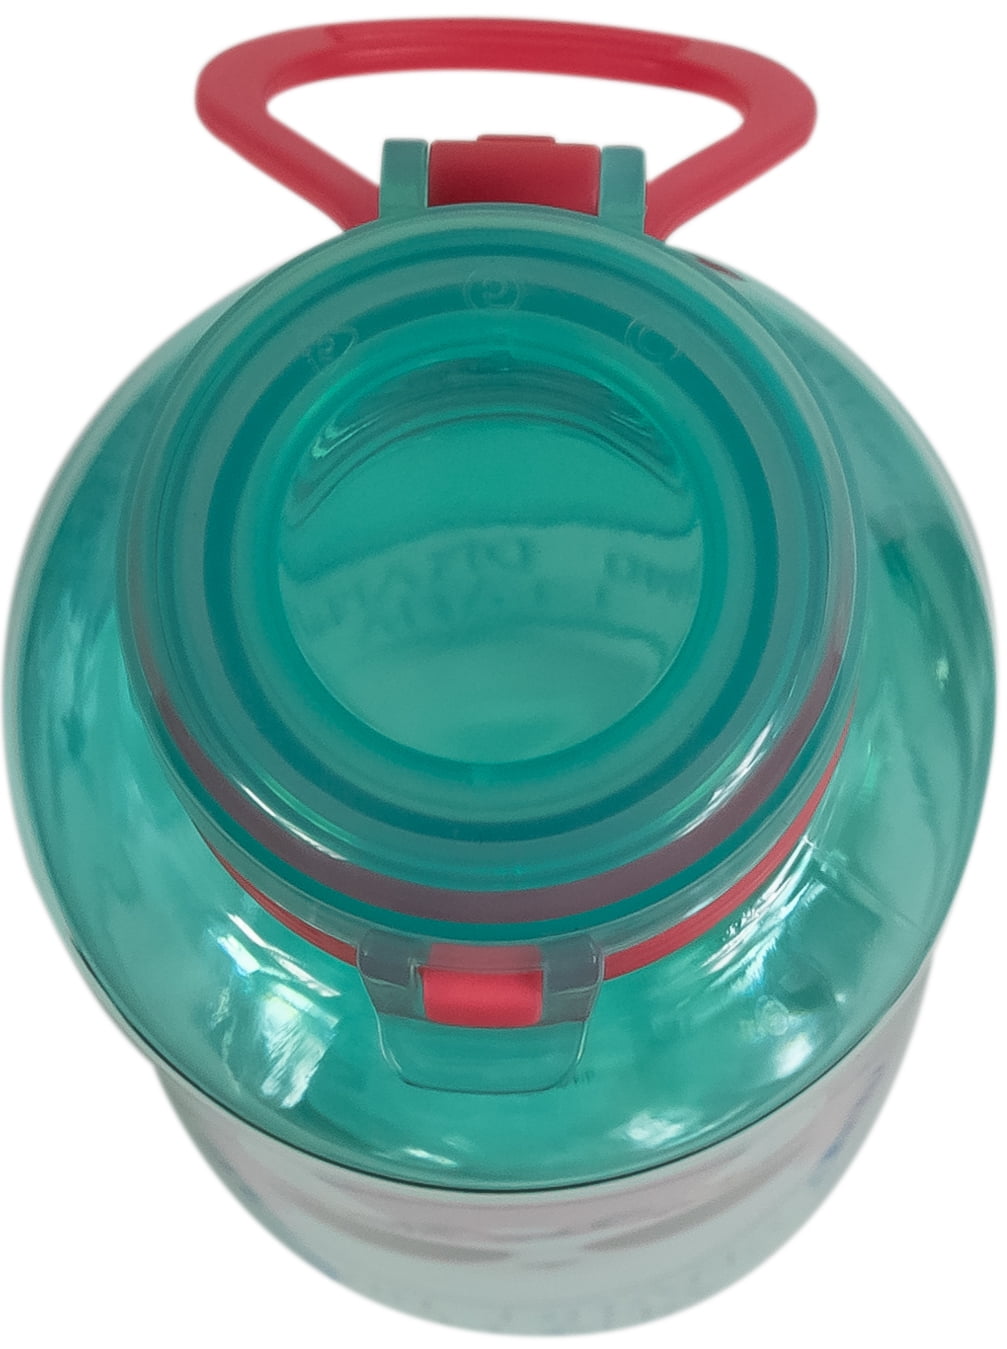 Cool Gear 2-Pack 16 oz Pop Lights Water Bottles